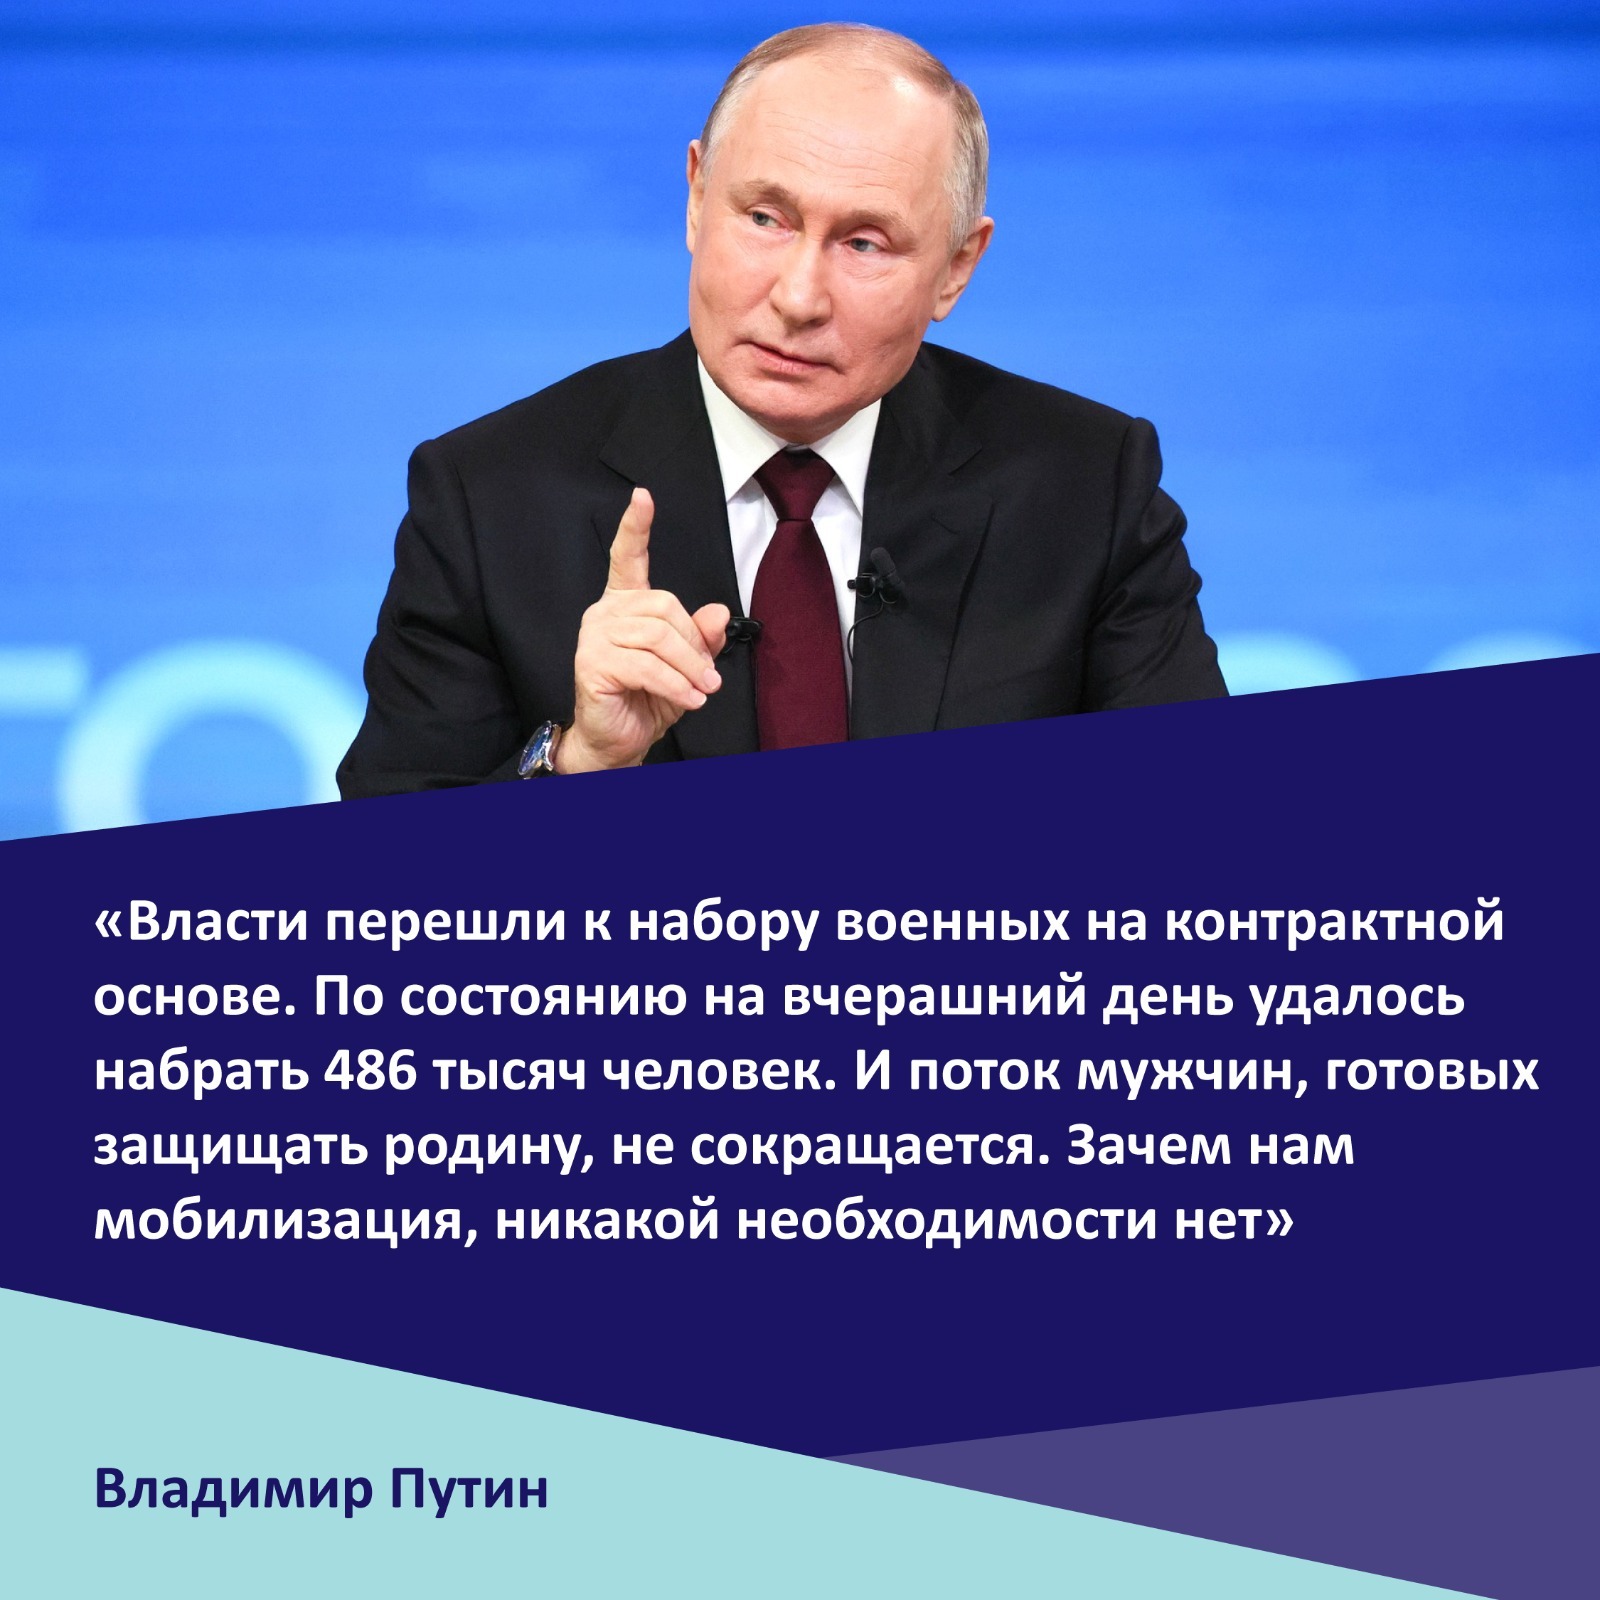 Глава государства Владимир Путин подчеркнул, что нужды в новой волне мобилизации нет